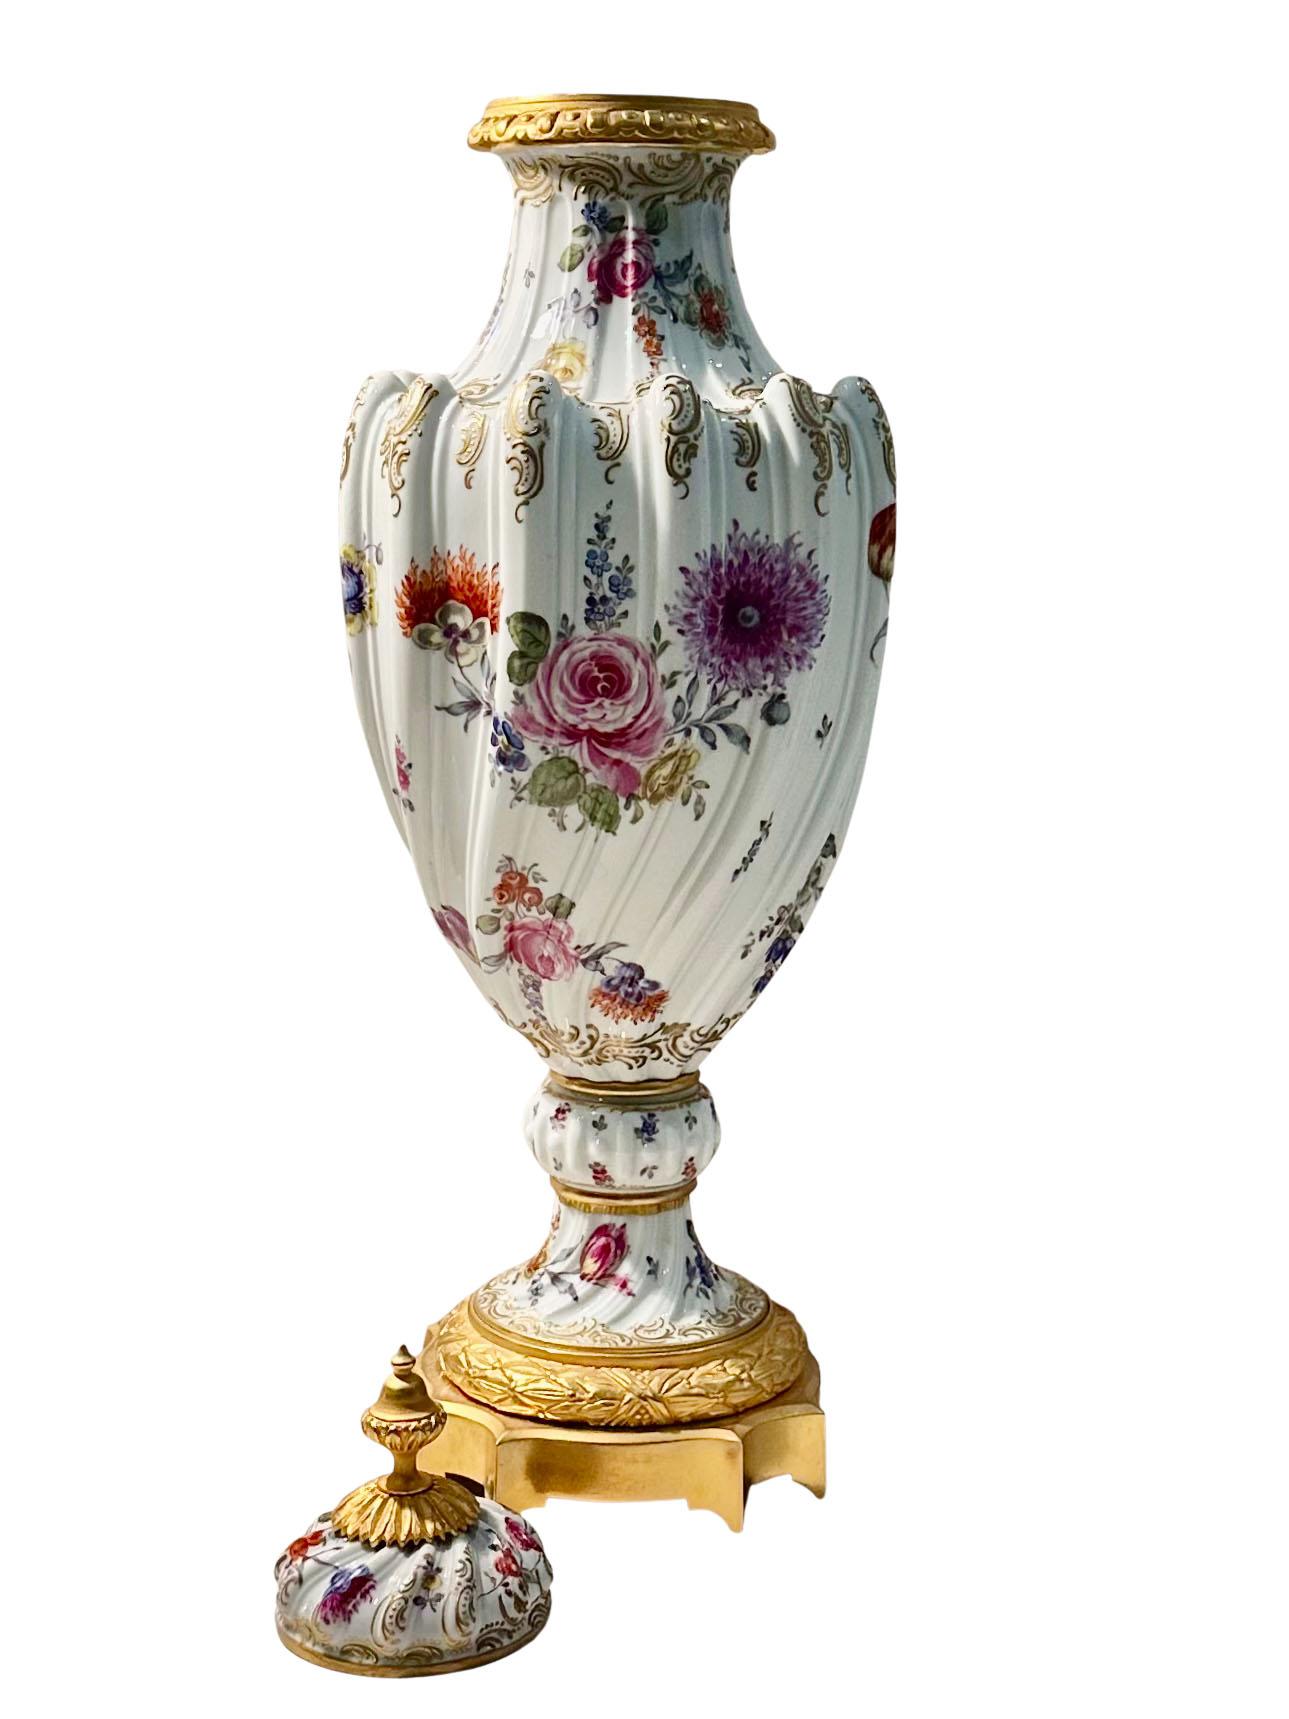 Eine einzelne Garnitur aus Sèvres-Porzellan, verziert mit handgemalten Blumen. Ausgestattet mit restauriertem Bronze-Ormolu. Es ist wunderschön bemalt und dekoriert und befindet sich in einem hervorragenden Zustand. Hat einen Deckel, der sich